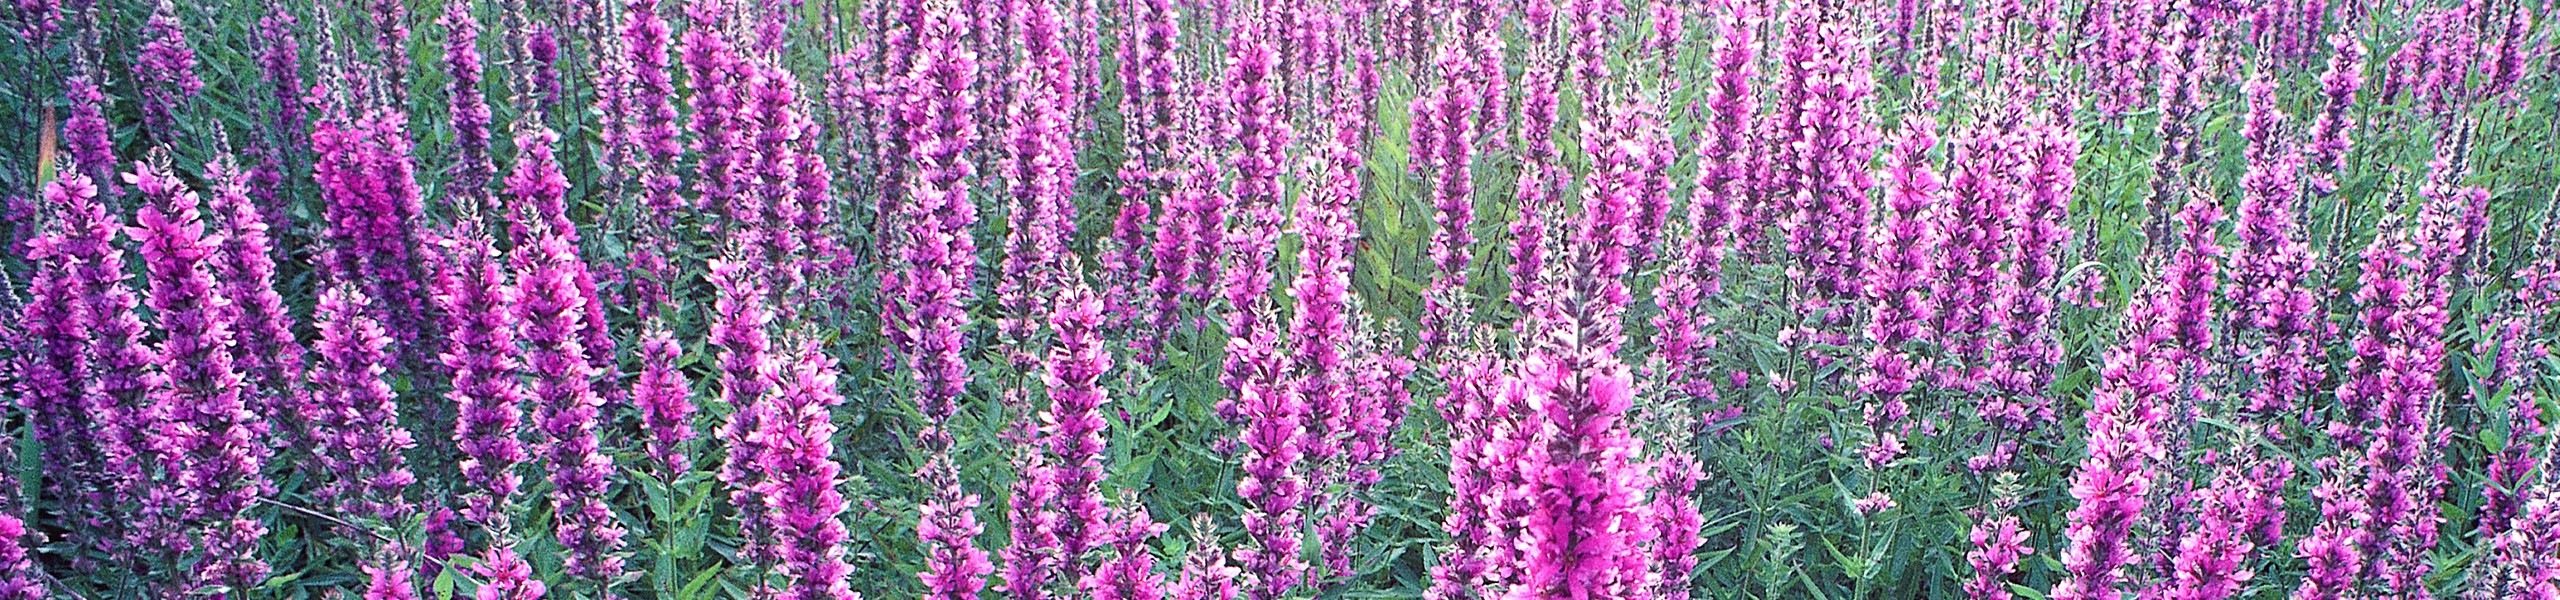 Field of pretty purple flowers